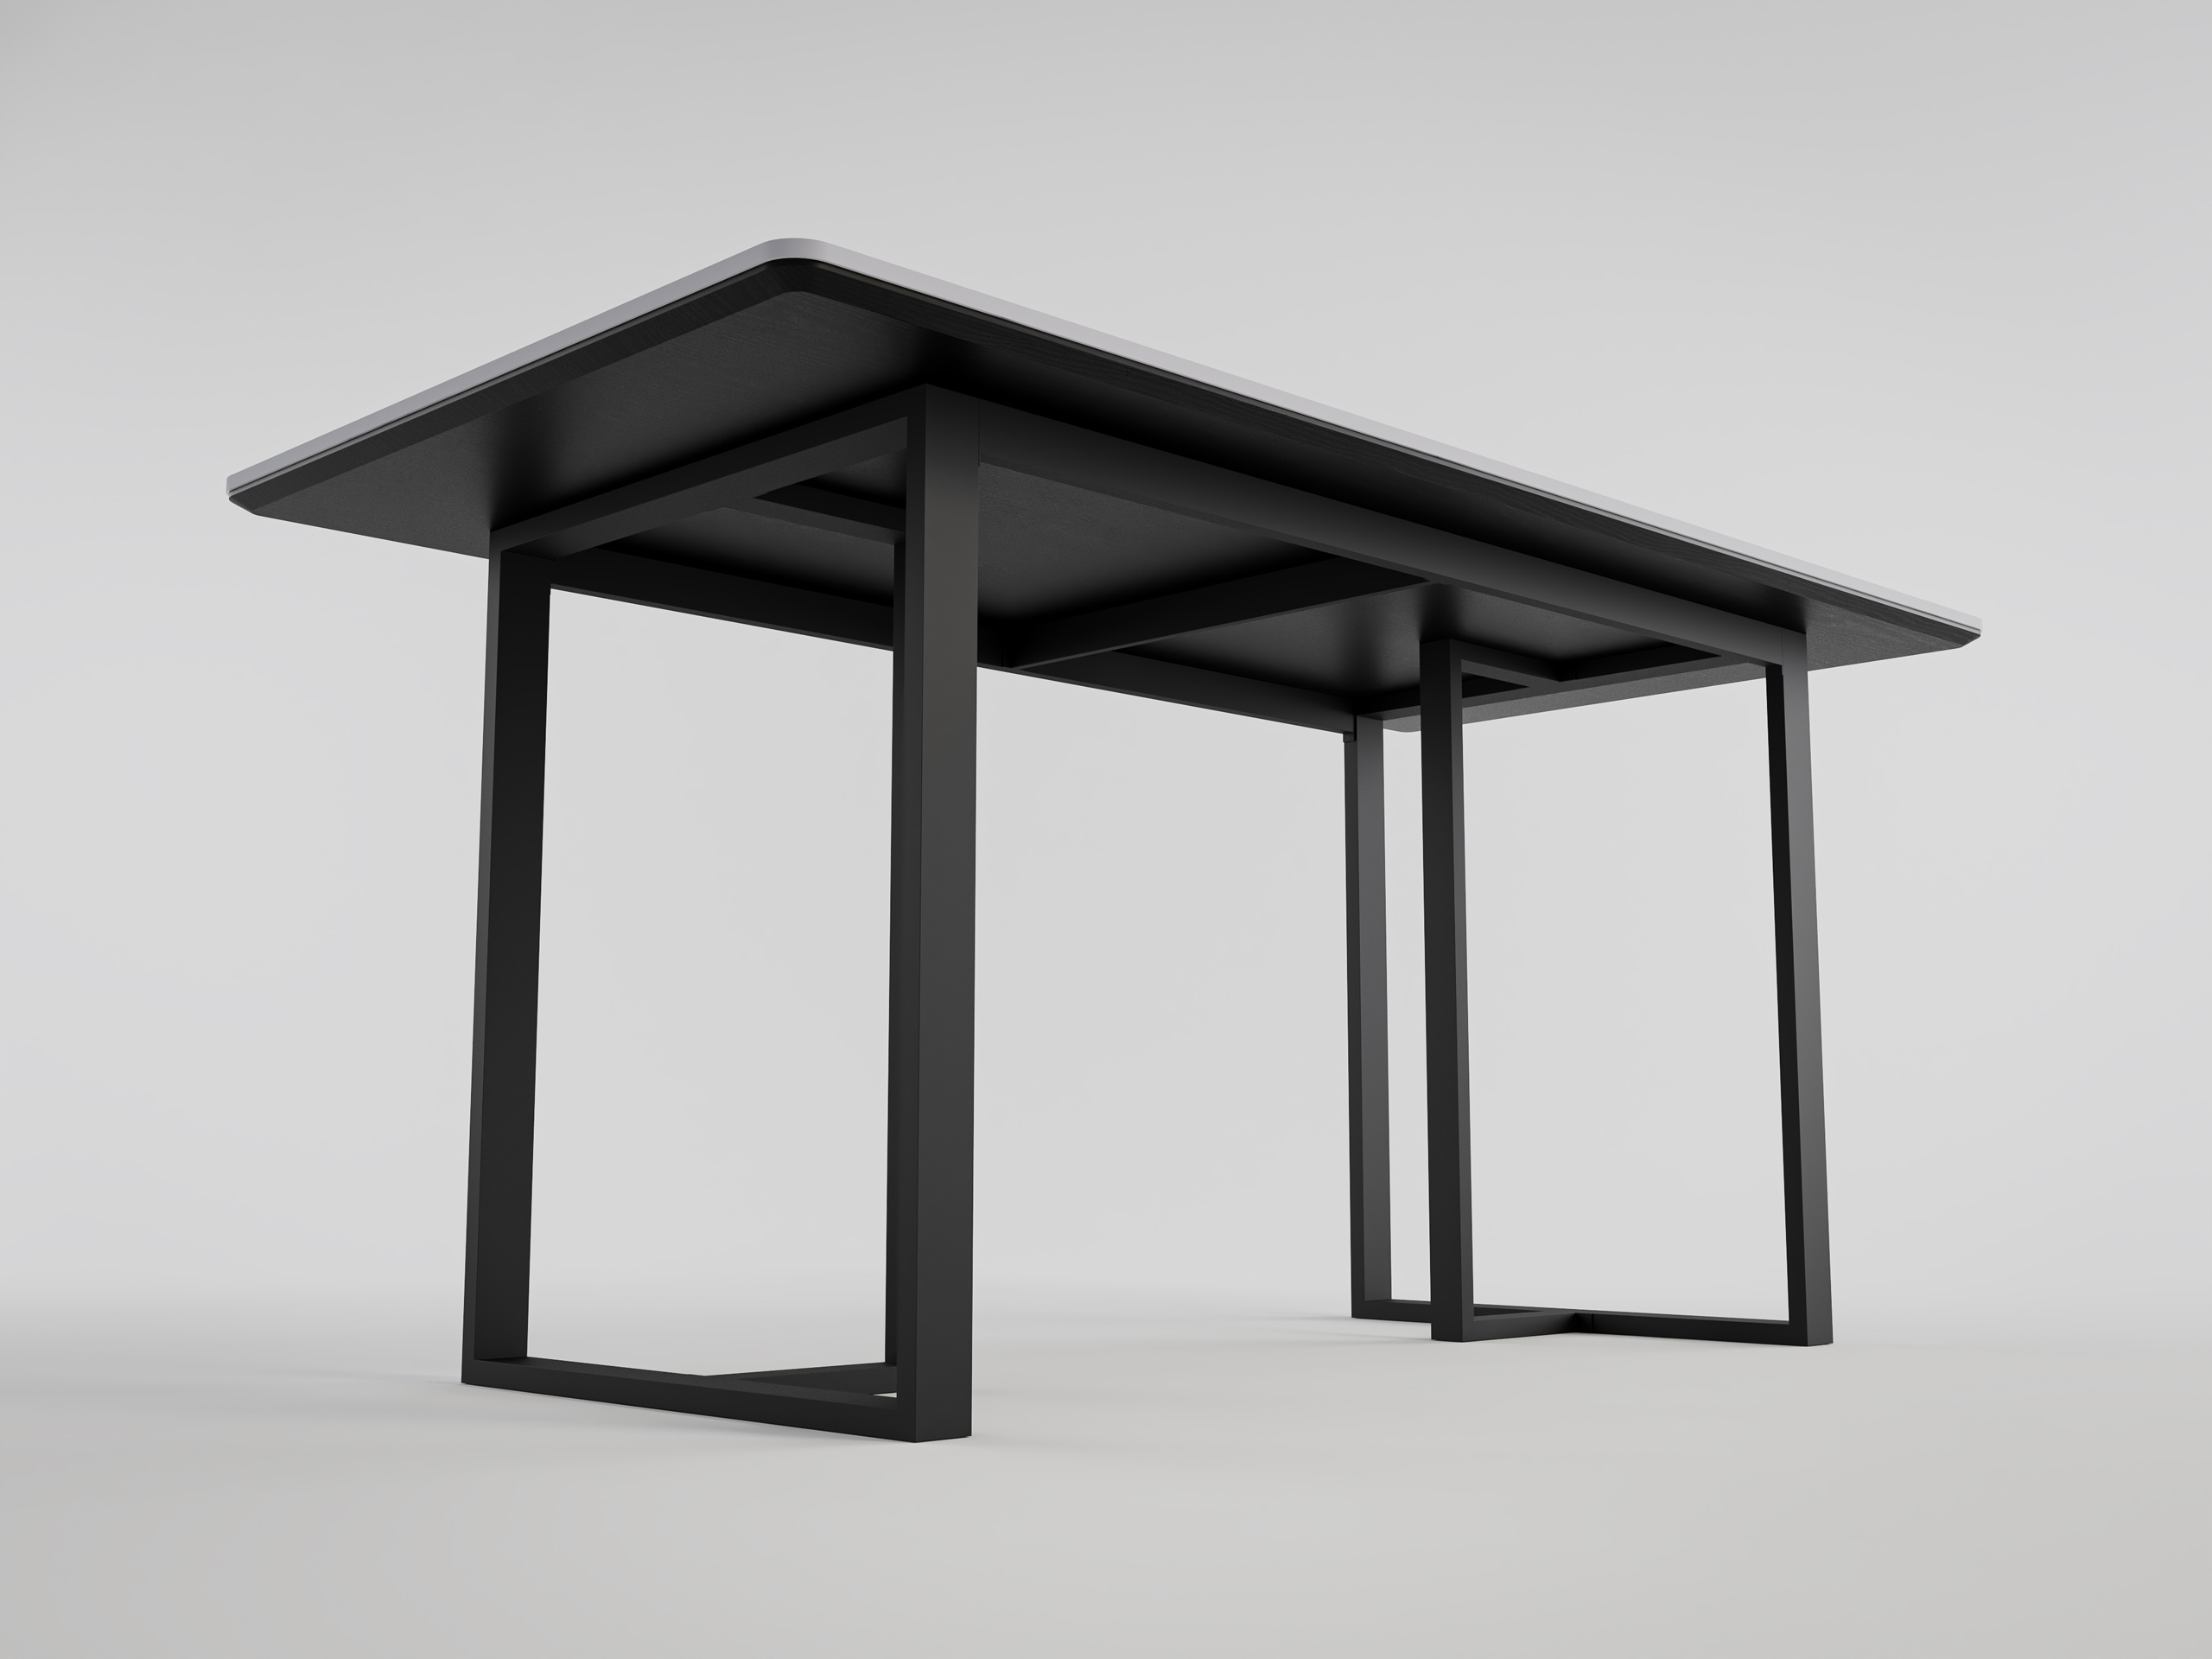 Esszimmertisch MIAS 160x80cm weiße Keramikplatte schwarzes massives Tischgestell